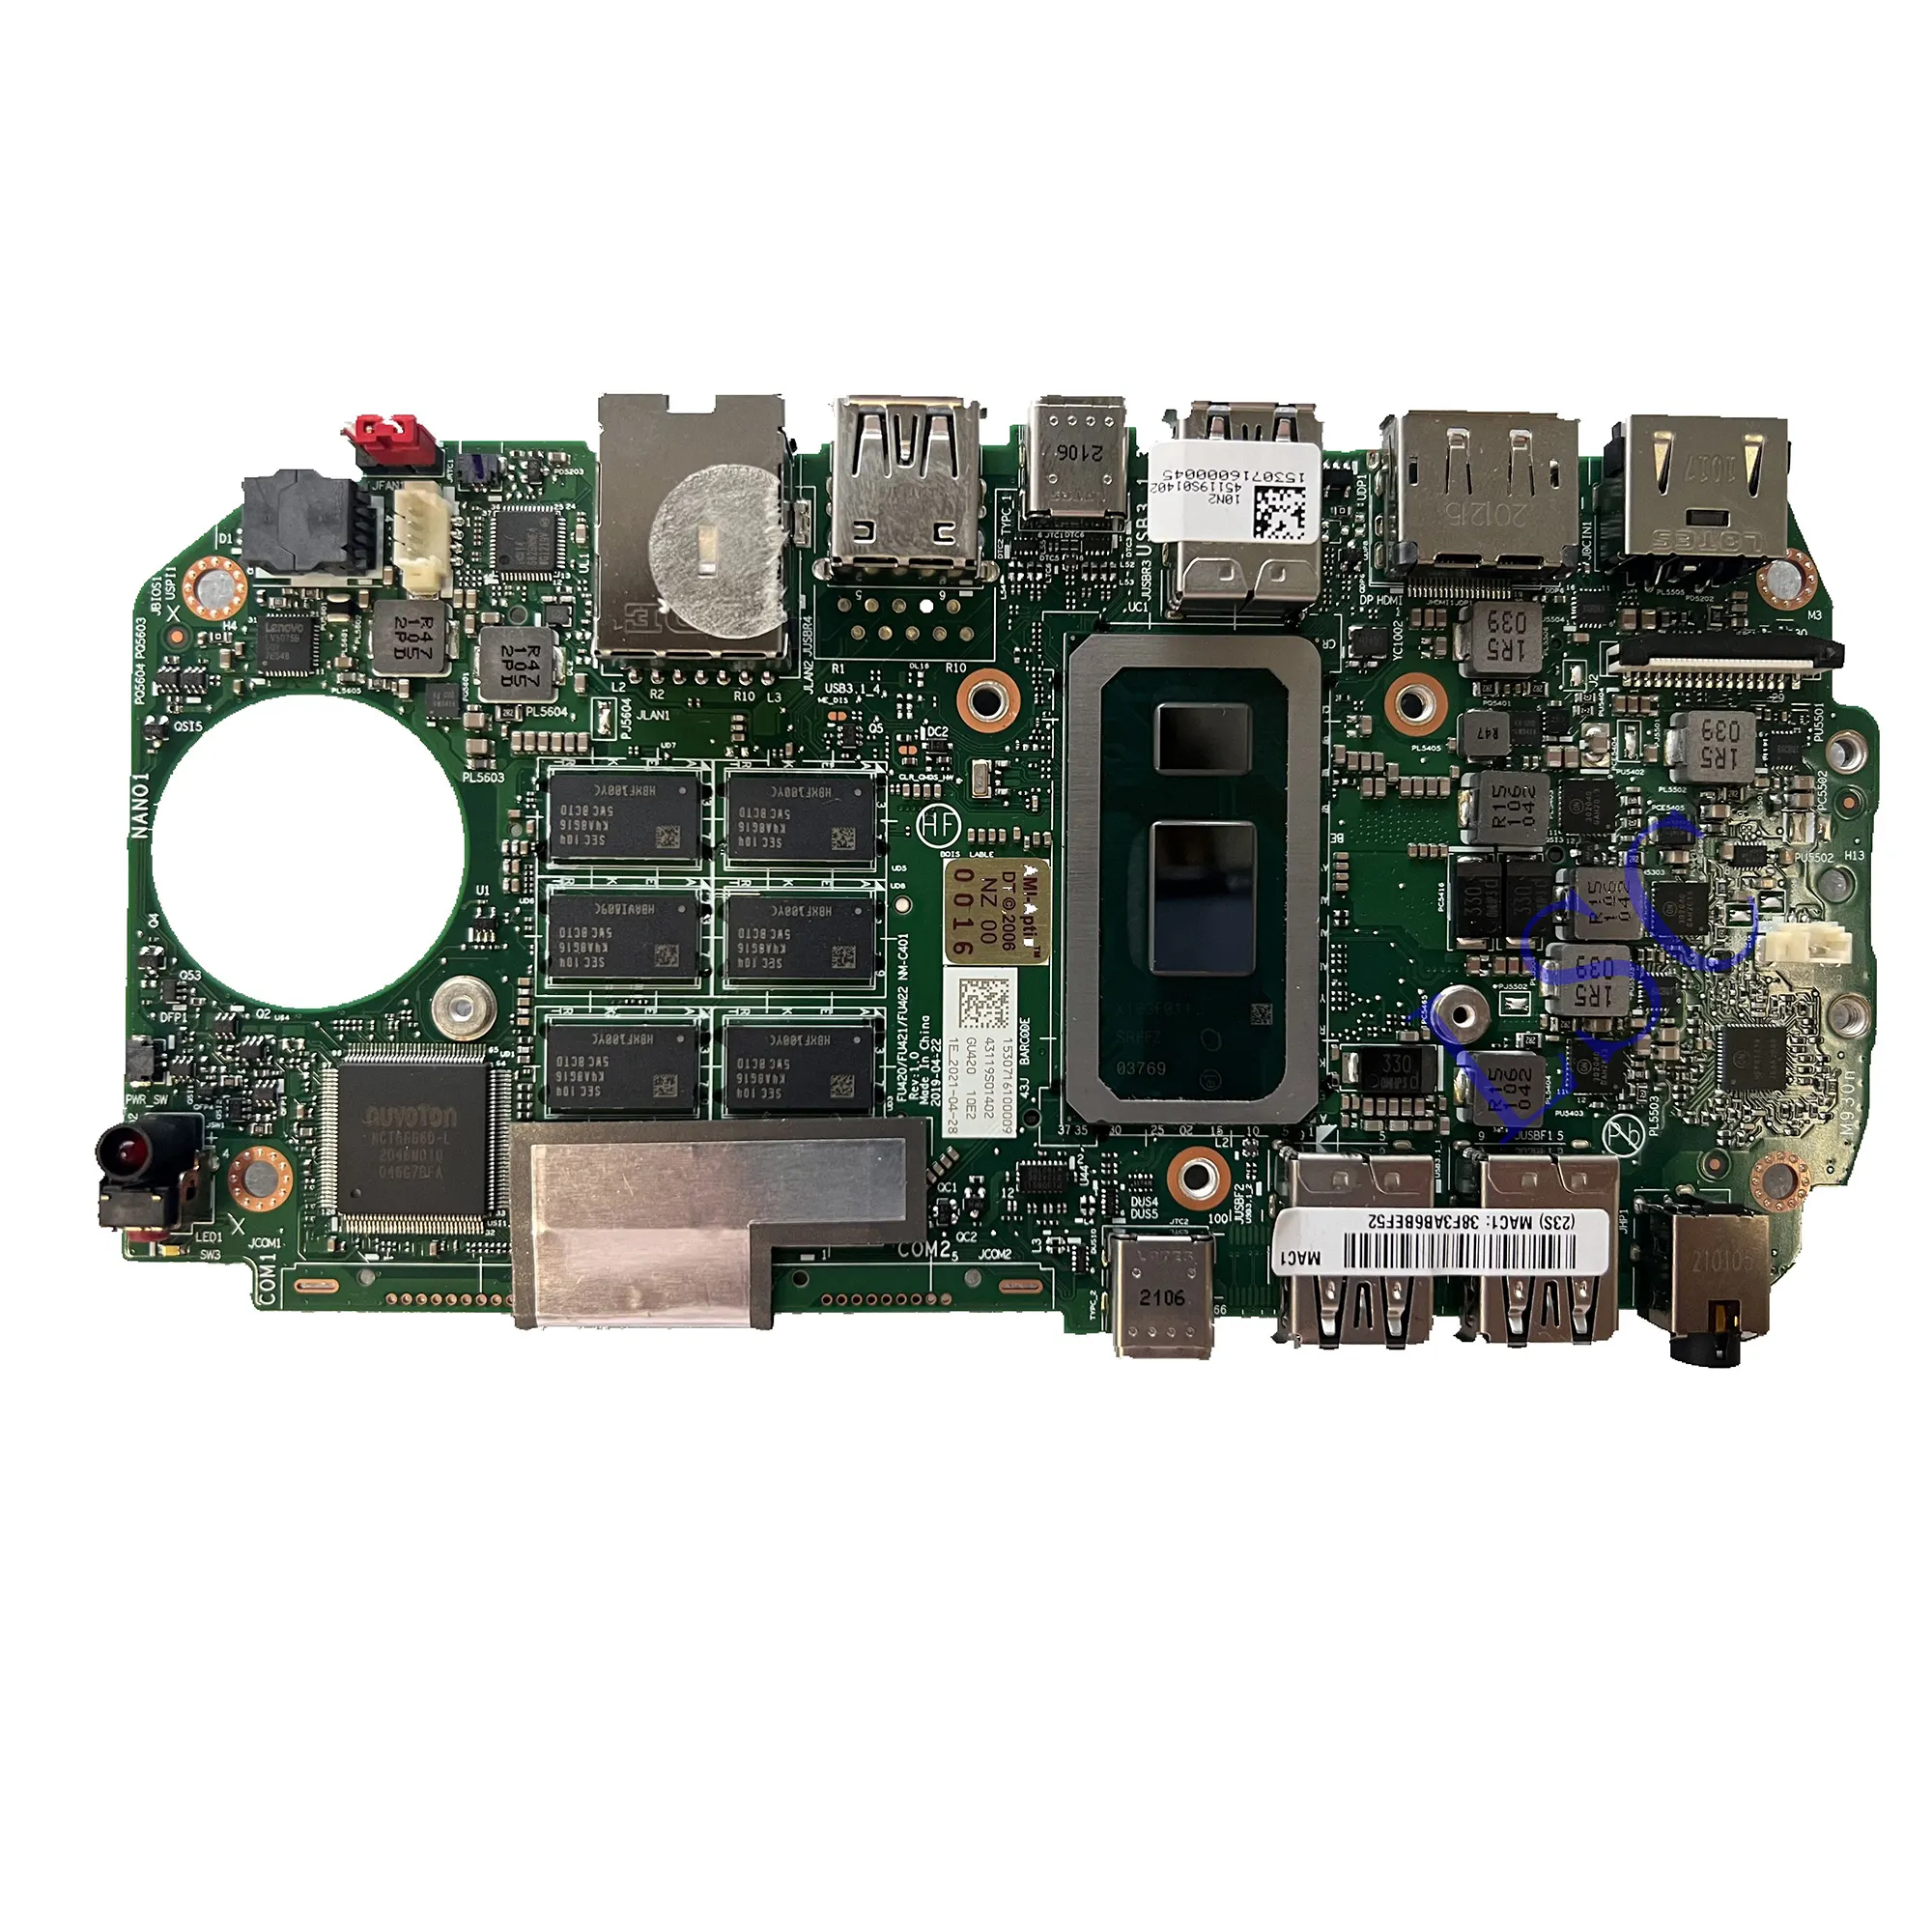 NM-C401 Hauptscheibe für ThinkCentre M90n-1 Desktop-Hauptscheibe CPU:4205U RAM:4G FRU:5B20U53774 RDD4 100% Test OK